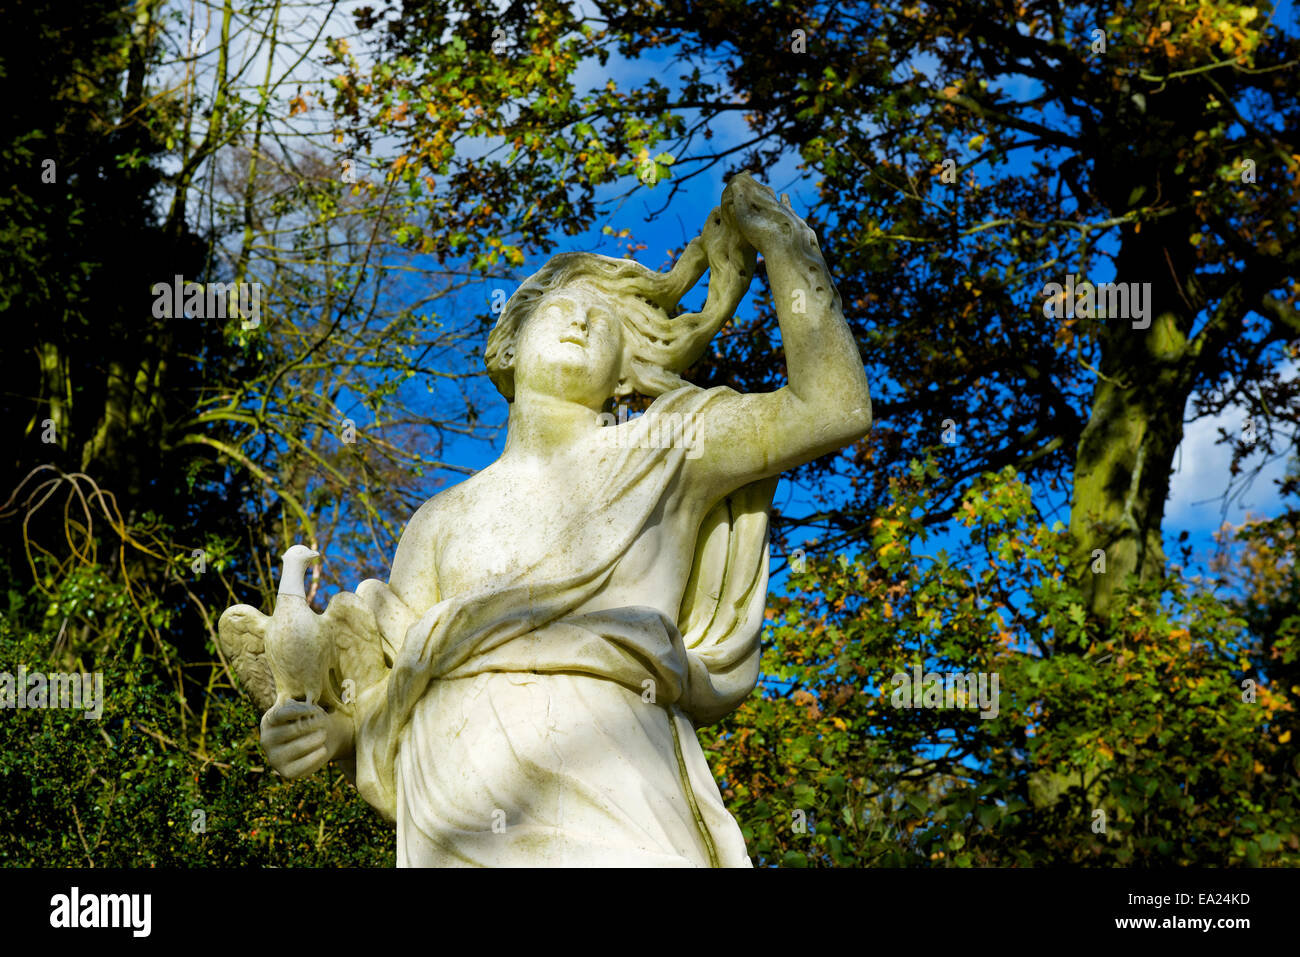 Statue dans les jardins de Belton House, près de Grantham, Lincolnshire, Angleterre, Royaume-Uni Banque D'Images